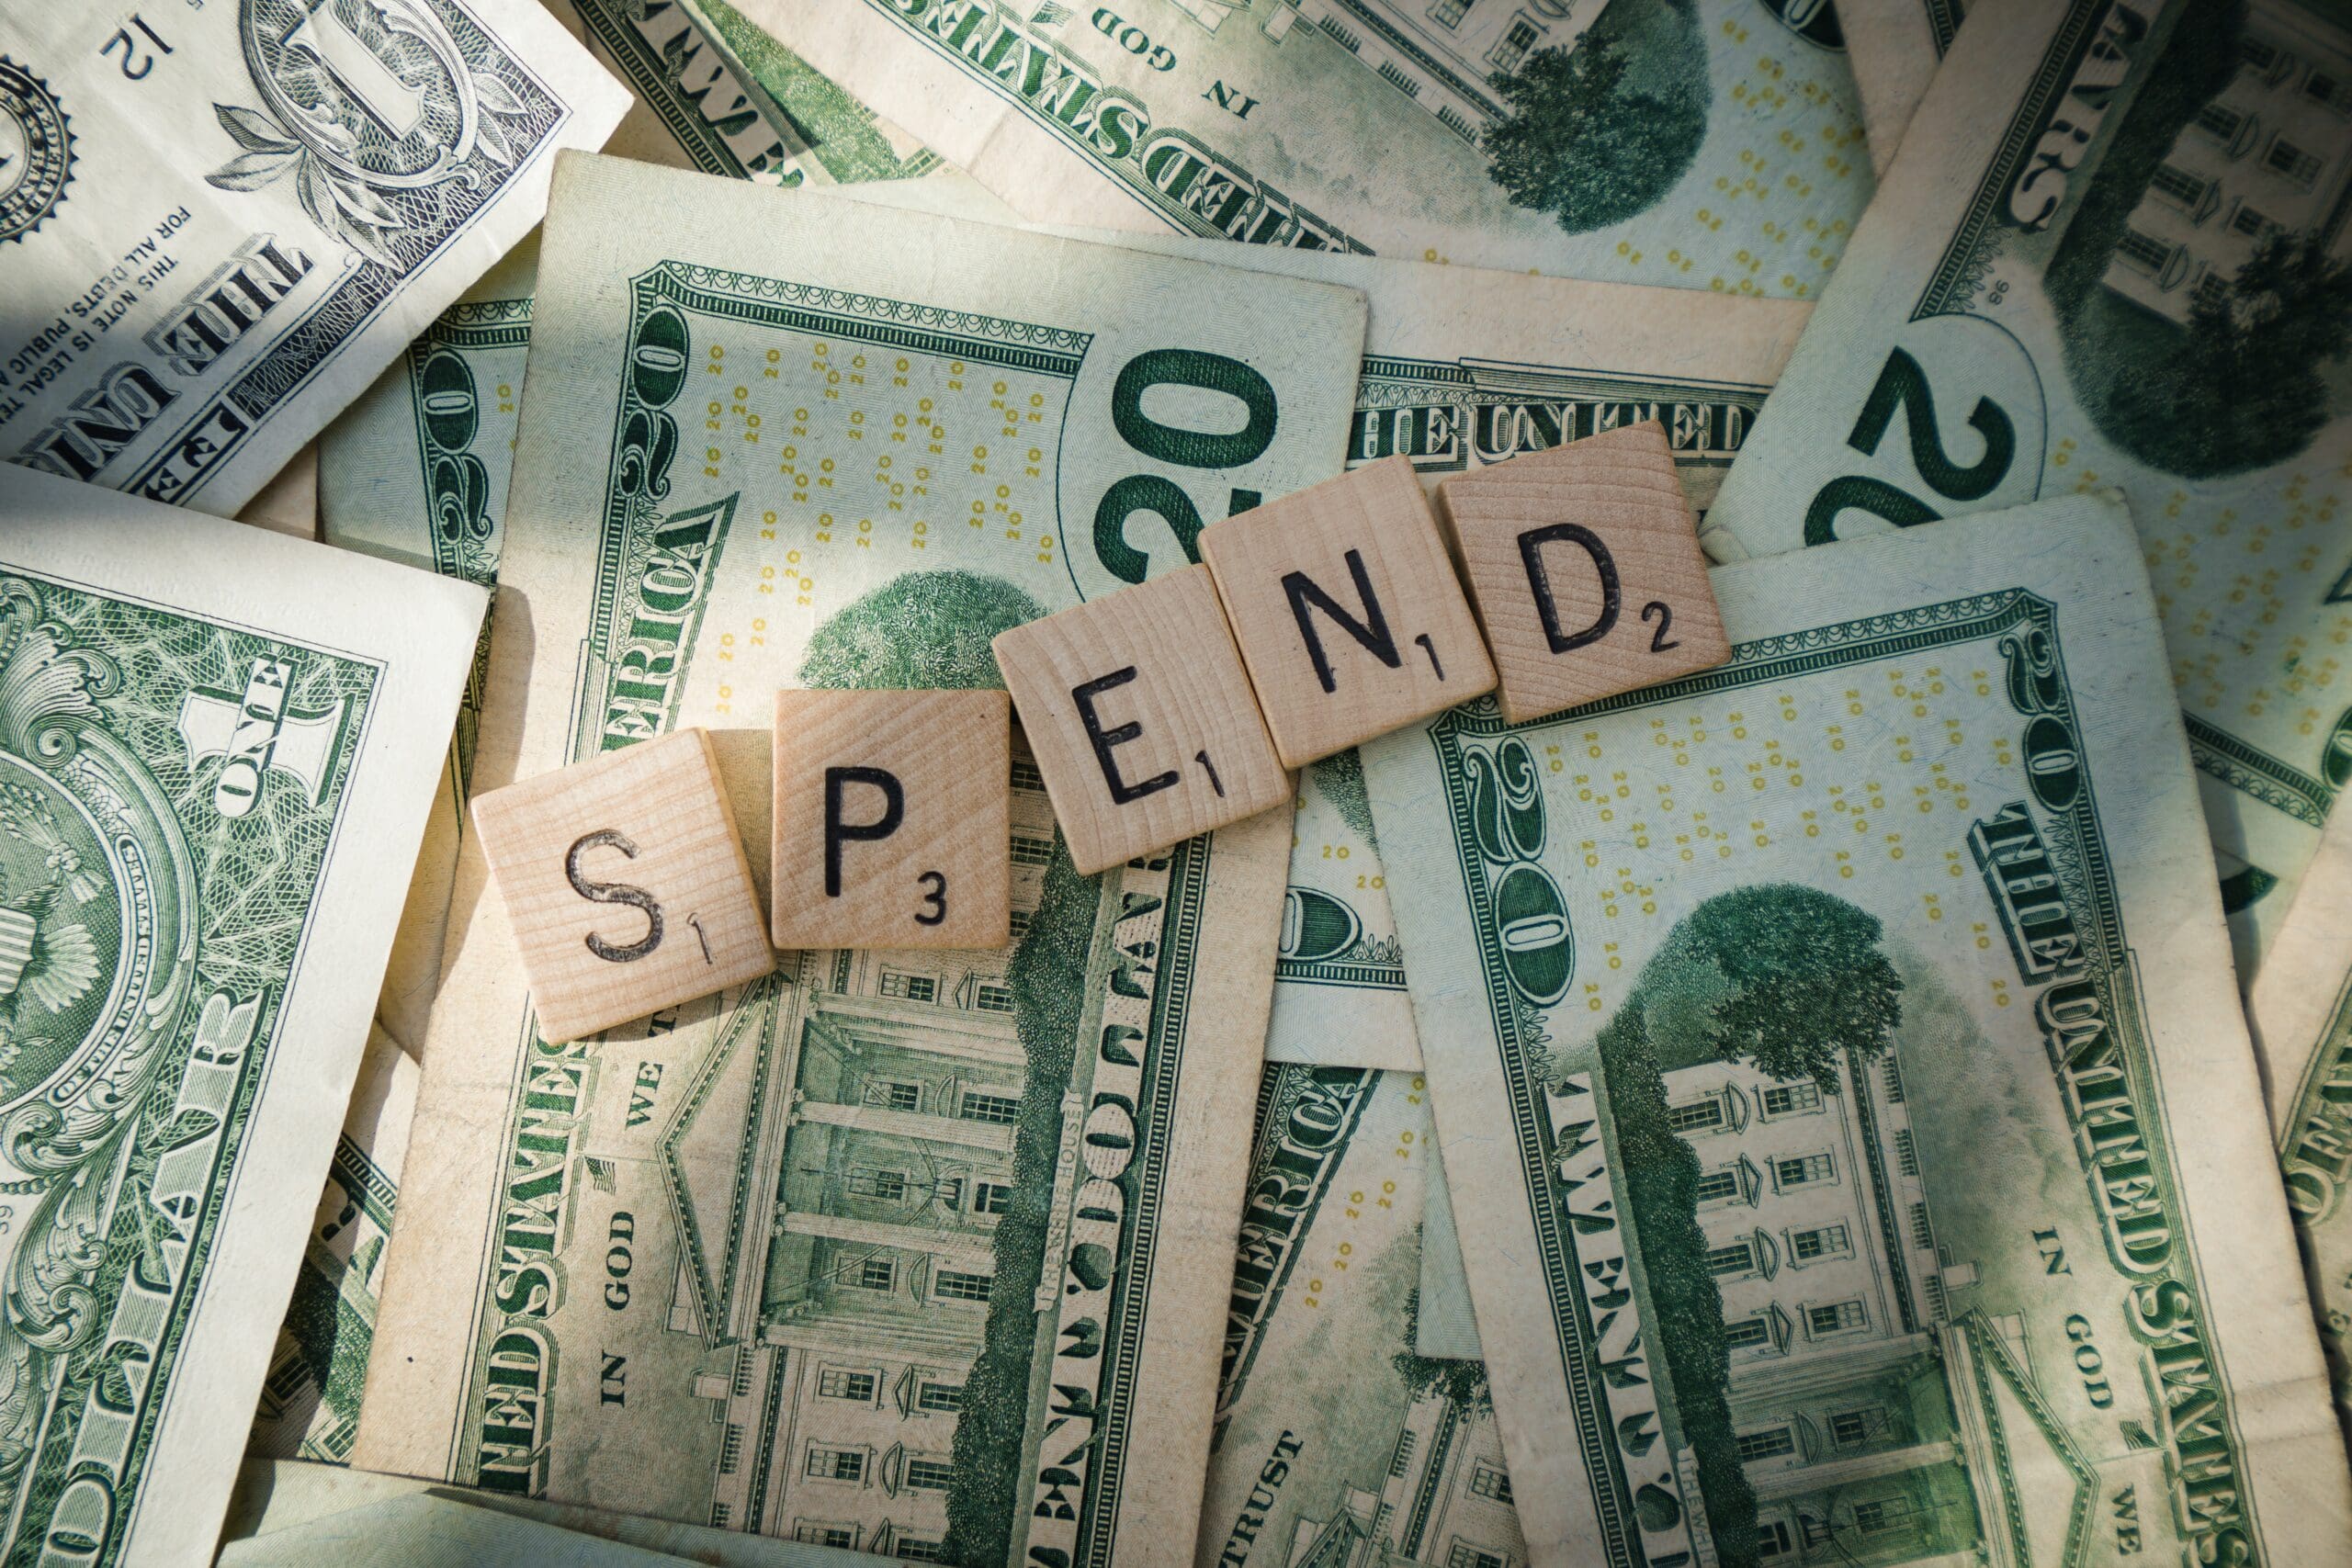 Scrabble letters spelling "Spend" on 20 dollar bills